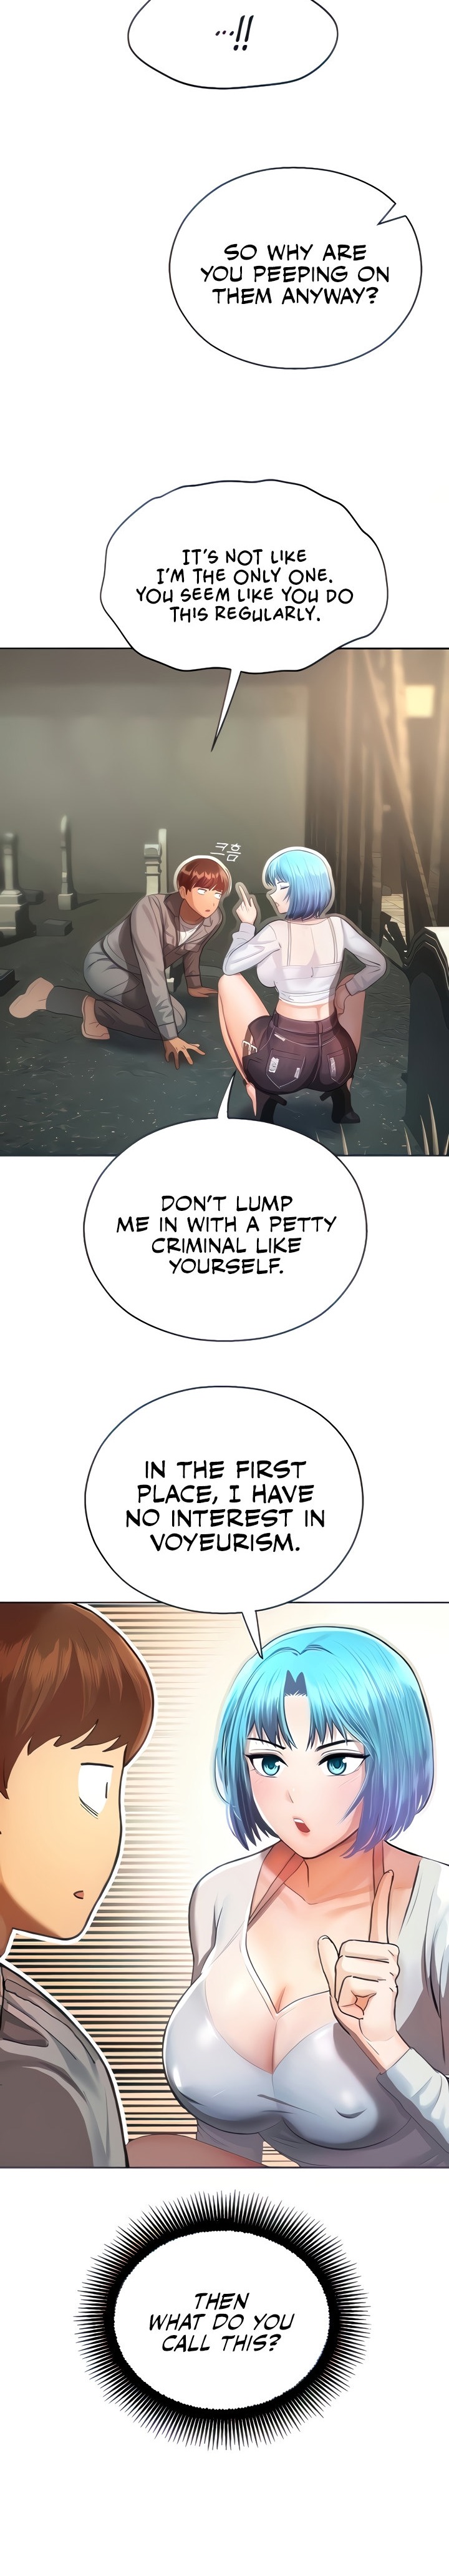 Destiny Land - Chapter 2 Page 9